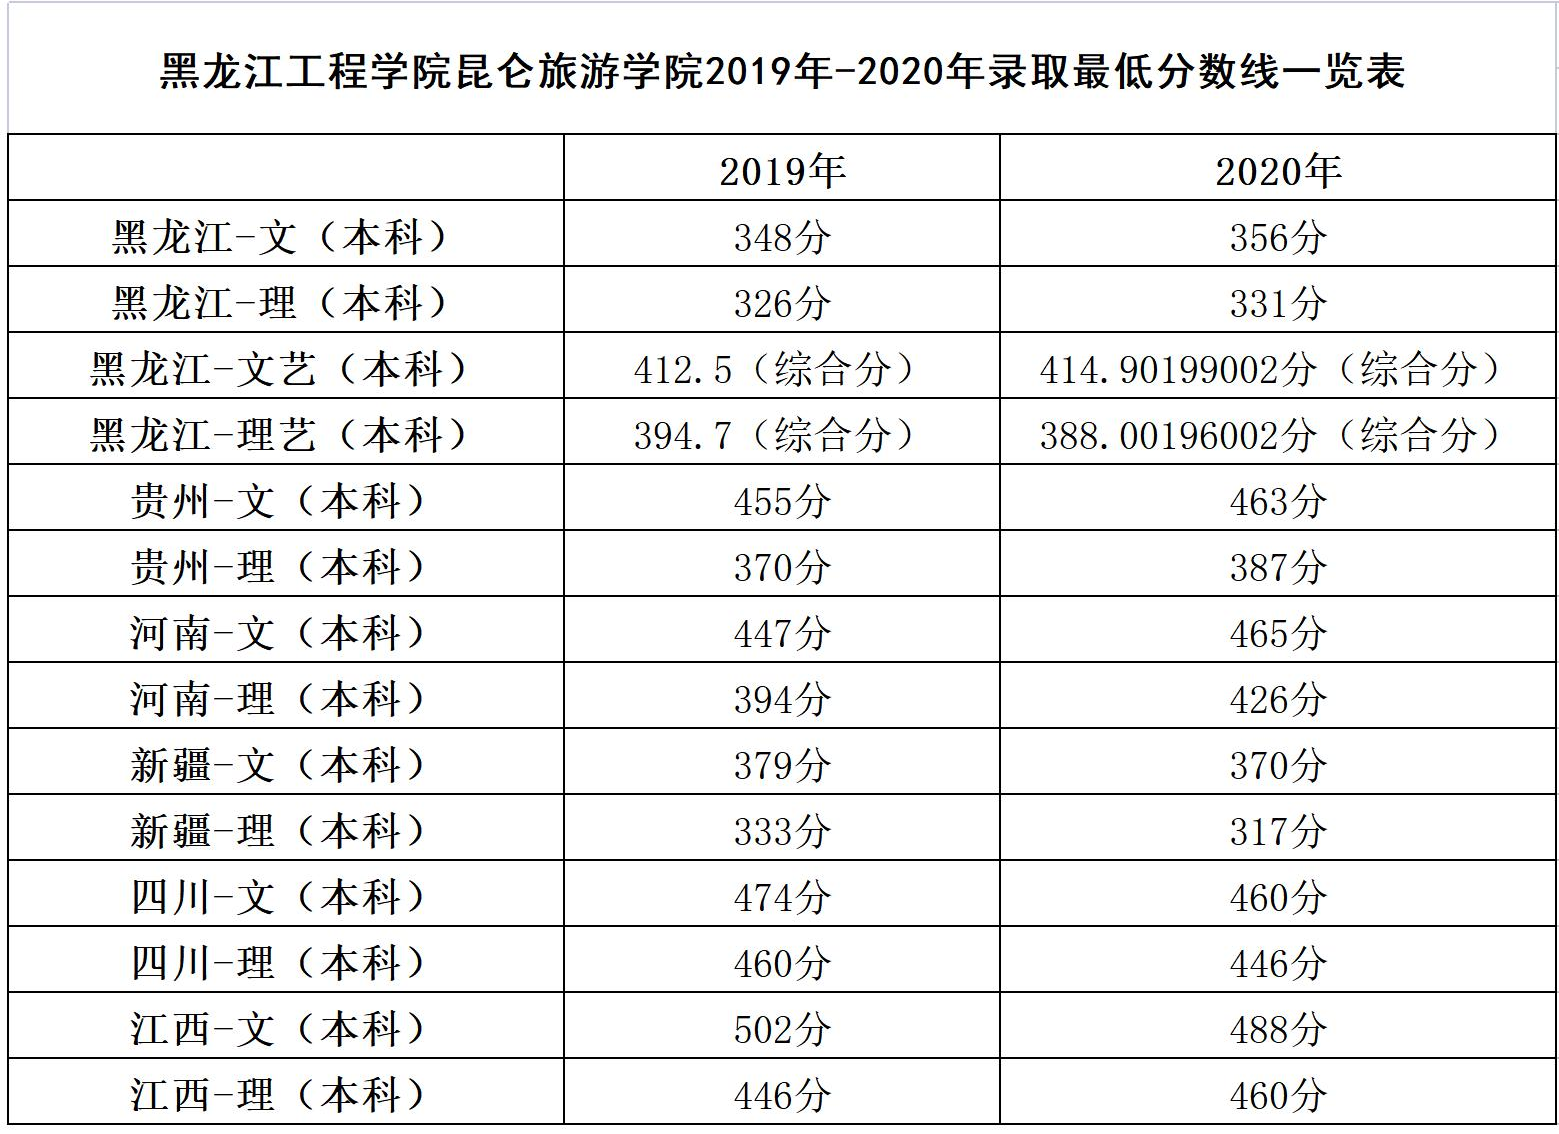 黑龙江工程学院昆仑旅游学院2019年-2020年录取最低分数线一览表